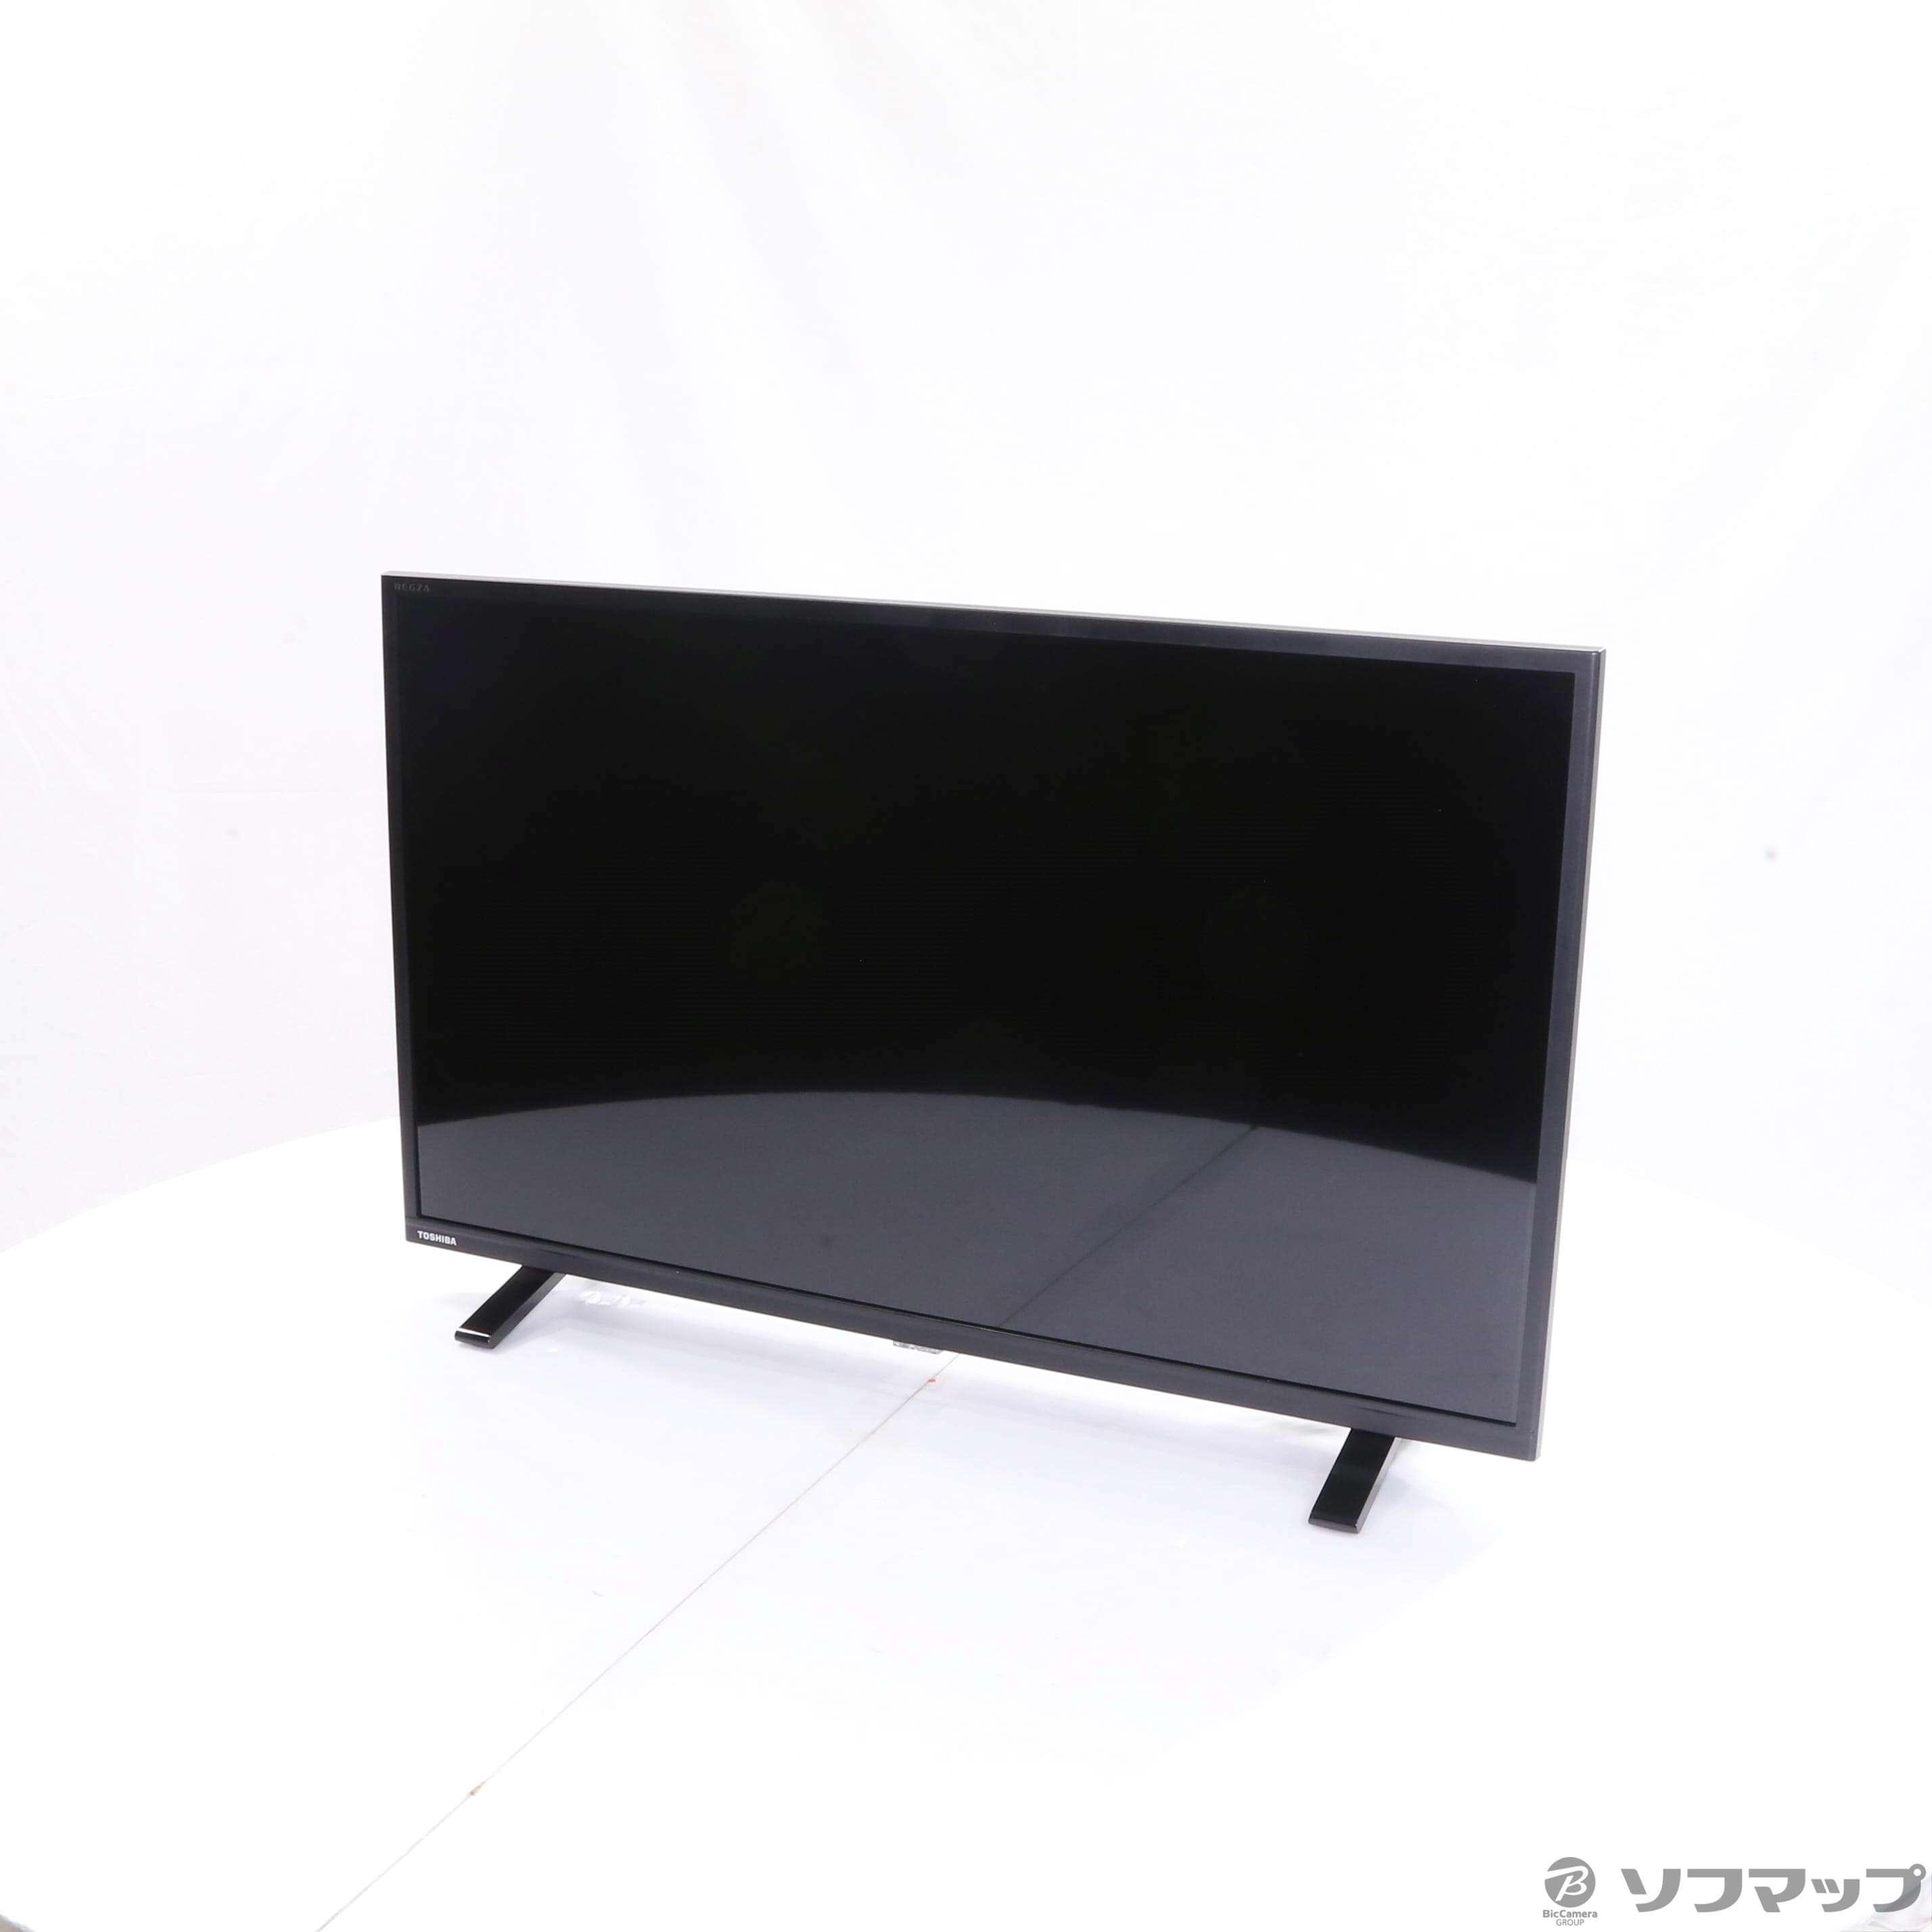 TOSHIBA 液晶TV 32S24 BLACK-